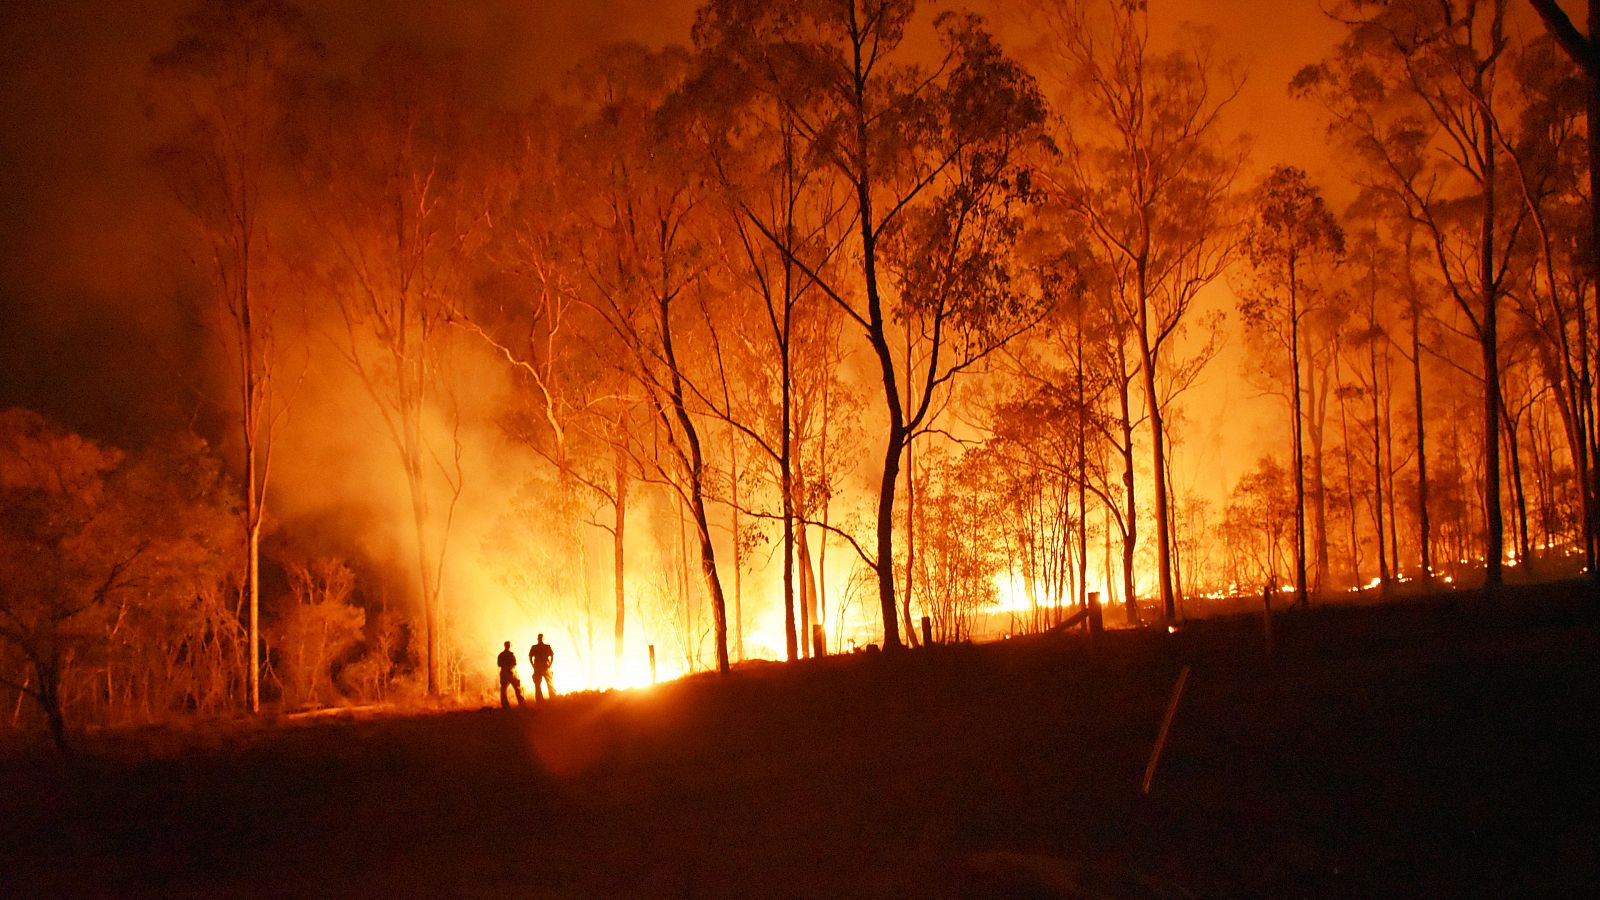 En los grandes incendios forestales (GIF), arde el 40% o más de la superficie total afectada.